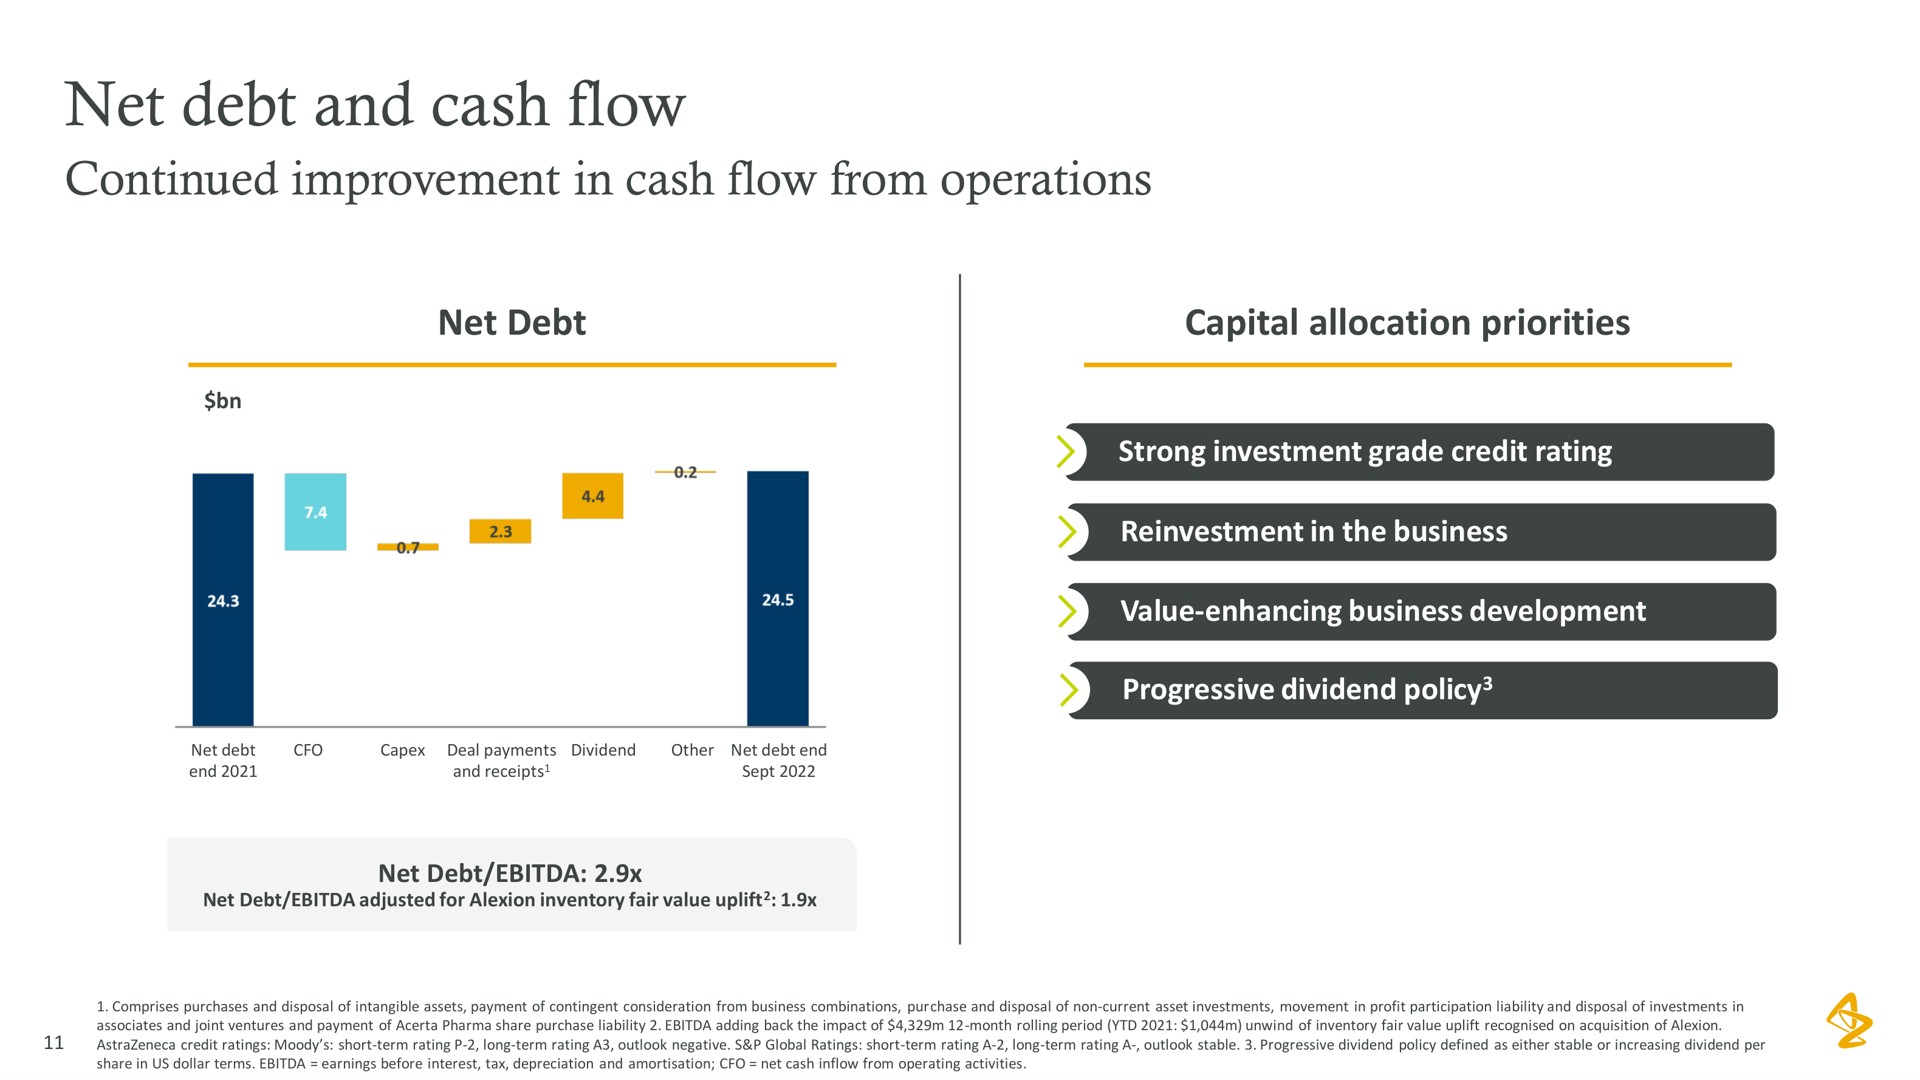 net debt and cash flow | AstraZeneca